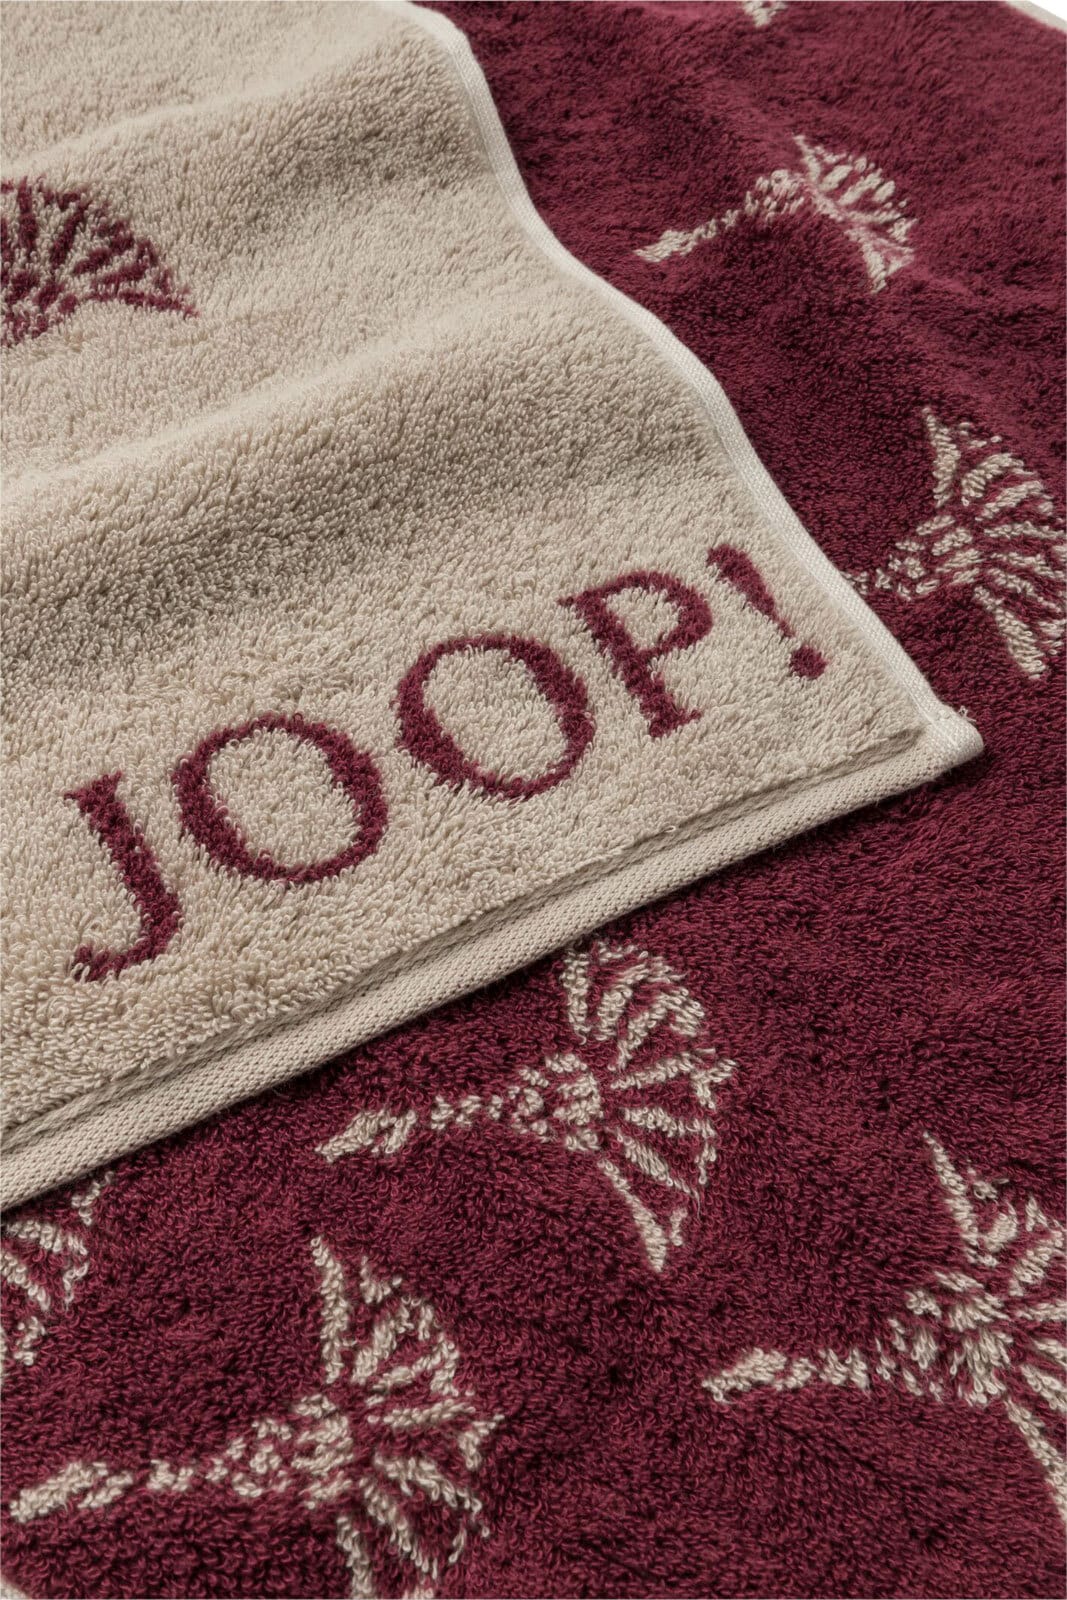 JOOP! Badetuch SELECT CORNFLOWER 80 x 150 cm rouge